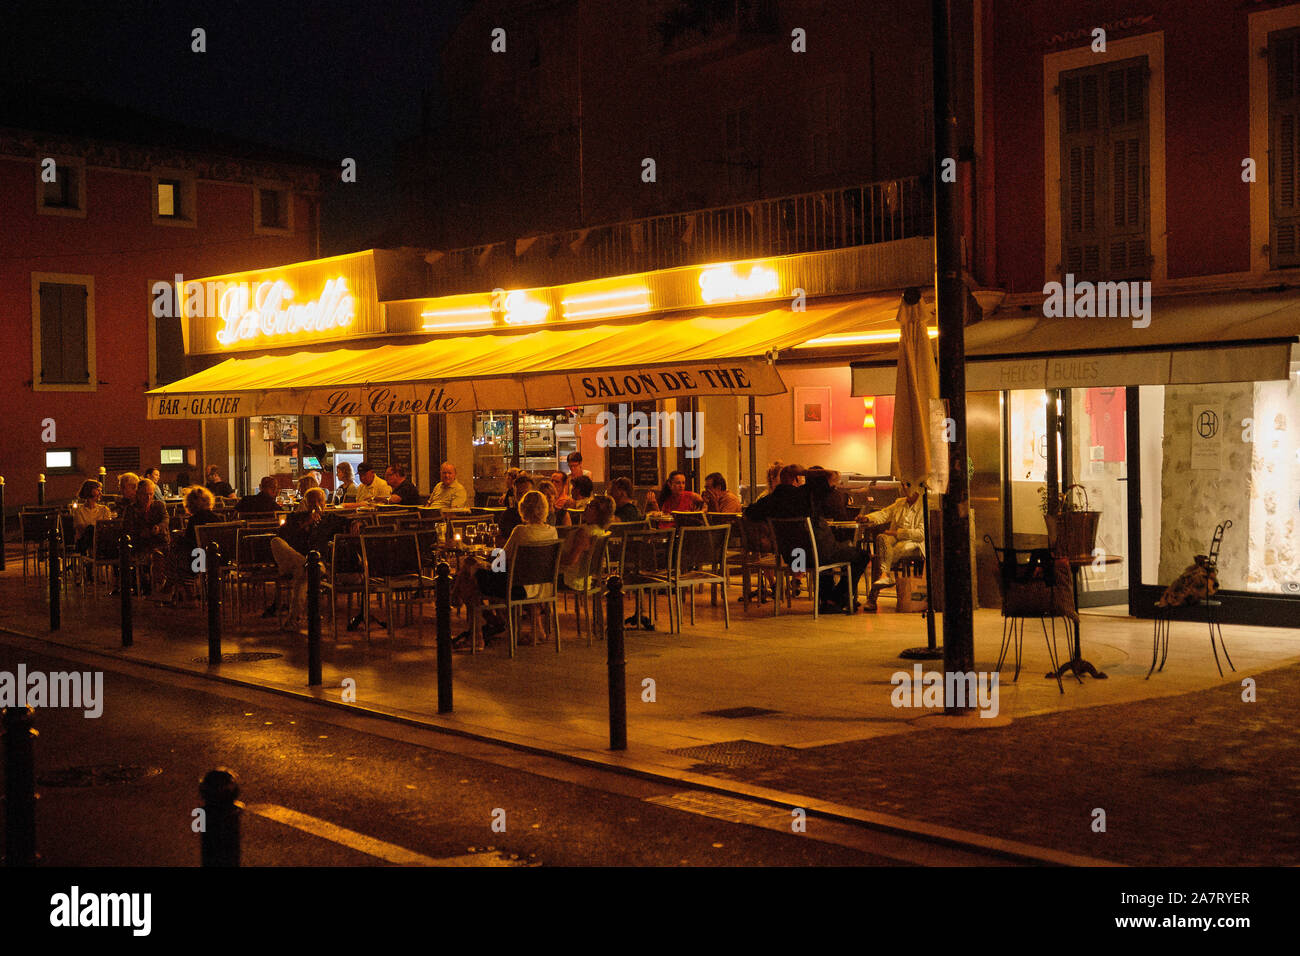 Restaurant, St Jean, Cap Ferrat Stock Photo - Alamy